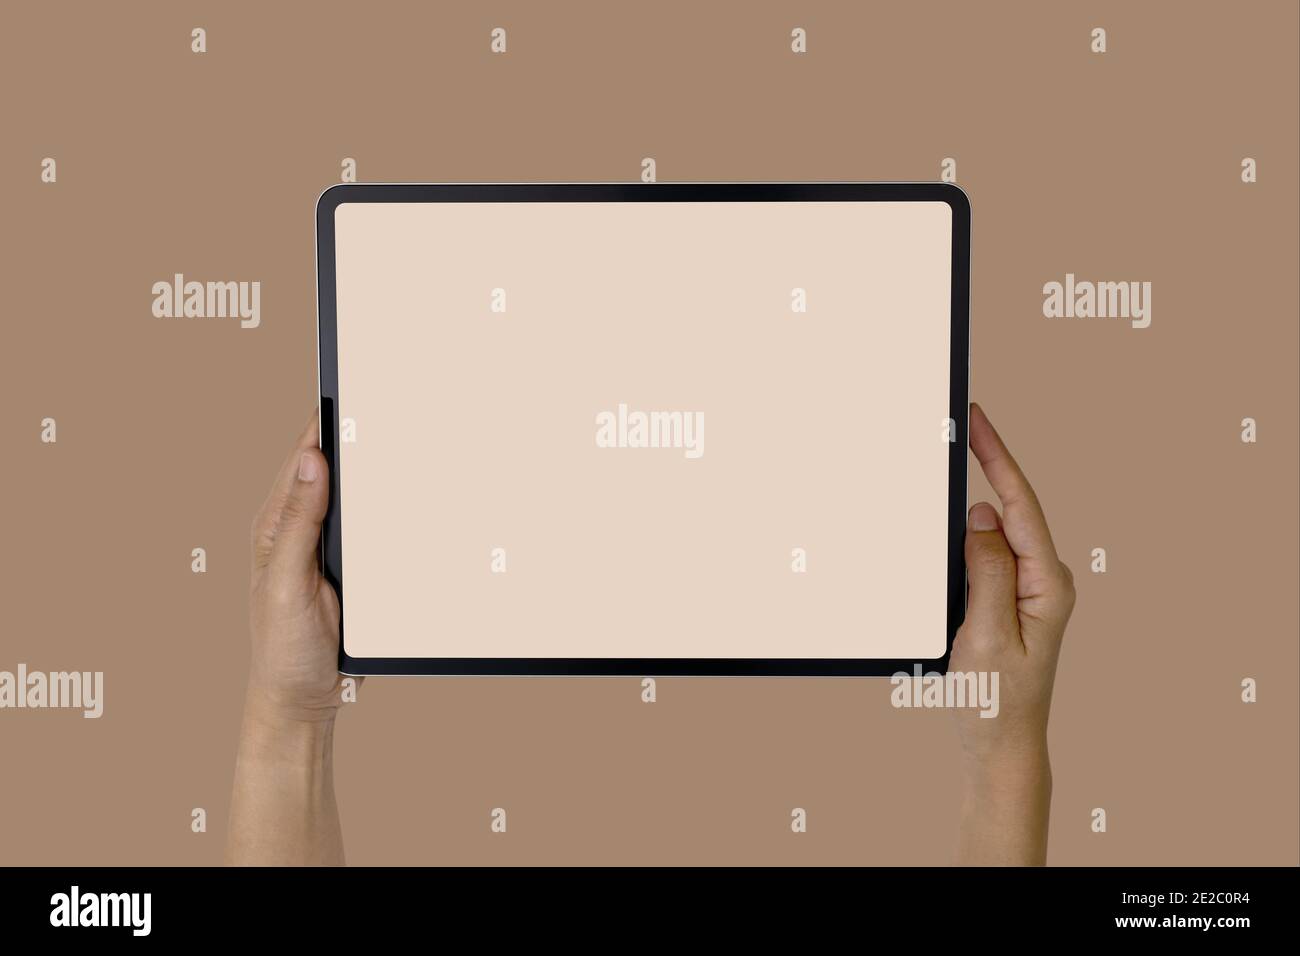 Image maquette de la main femmes tenant blanc écran blanc blanc téléphone portable tablette. Isolé sur fond blanc Banque D'Images